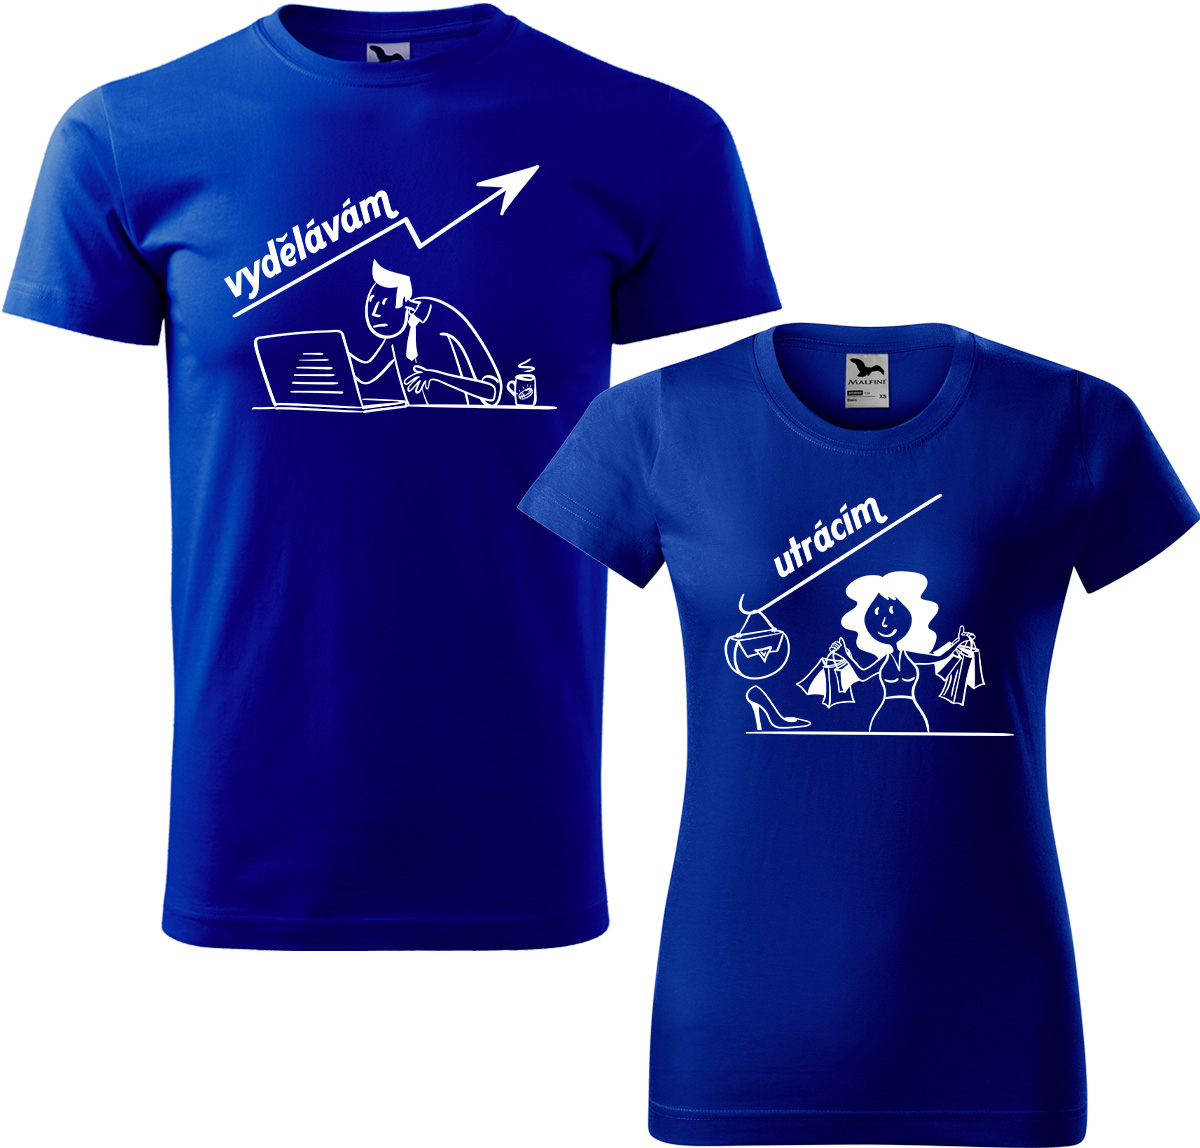 Trička pro páry - Vydělává, utrácí Barva: Královská modrá (05), Velikost dámské tričko: XL, Velikost pánské tričko: XL